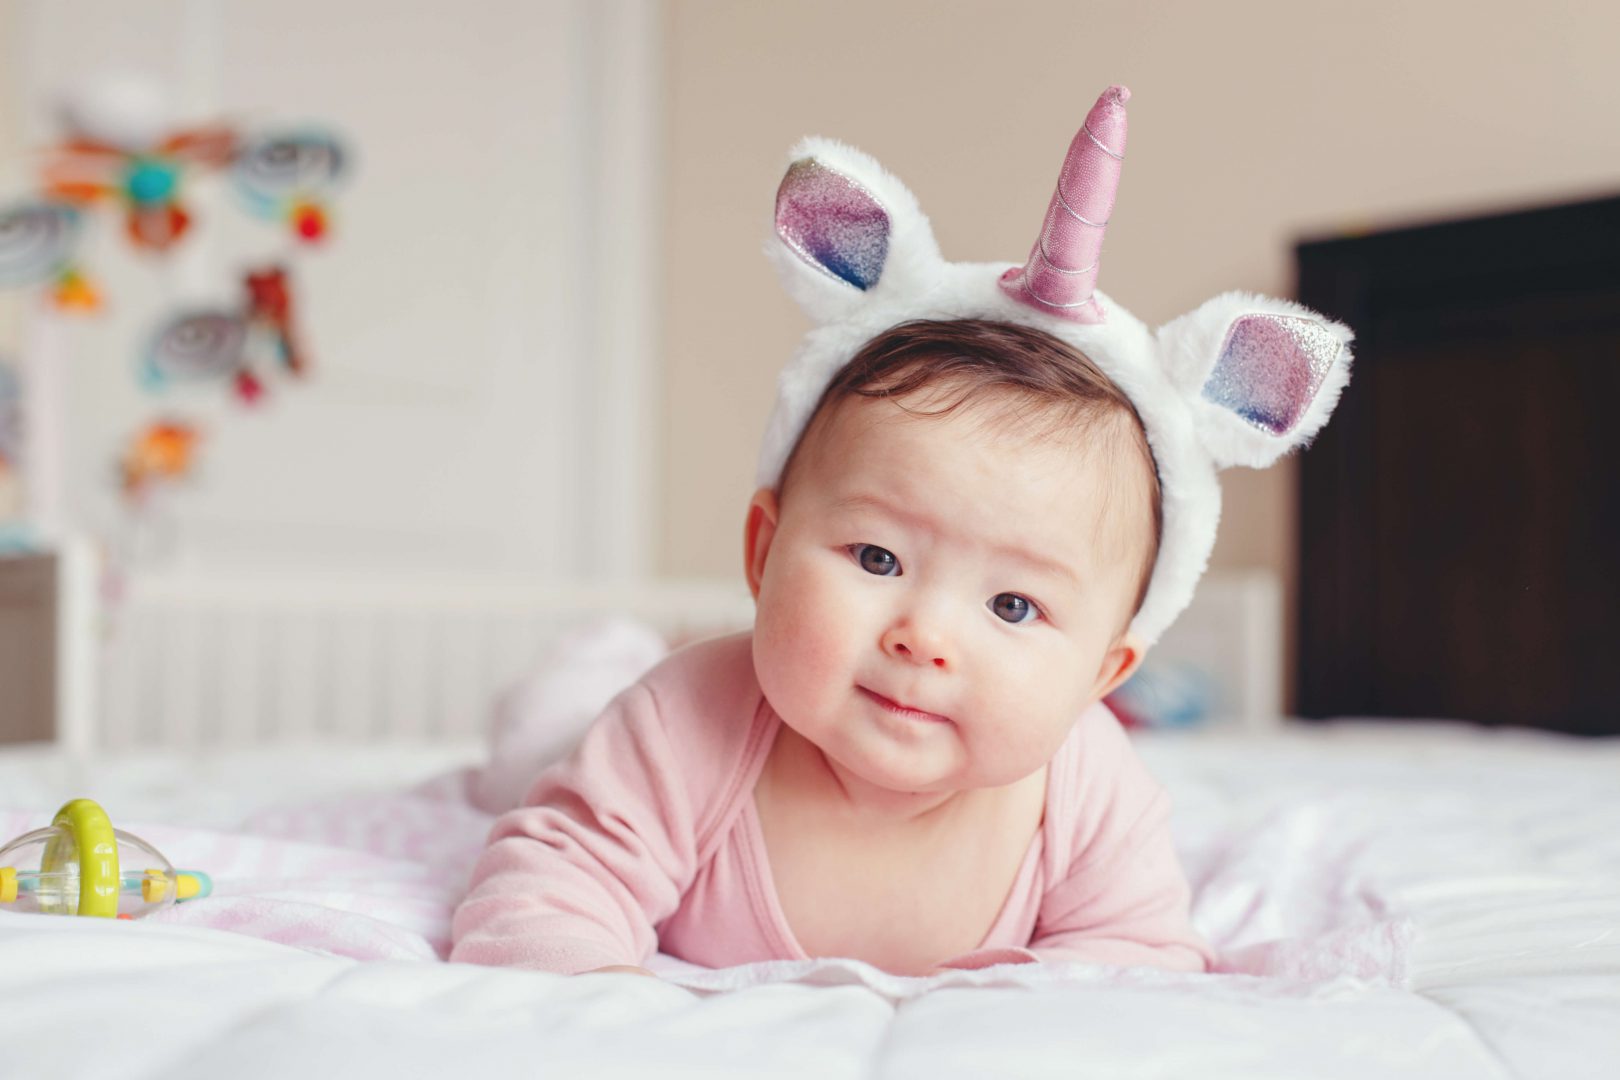 Tăng trưởng và phát triển của trẻ cho đến khi 1 tuổi: 3 ~ 4 tháng tuổi